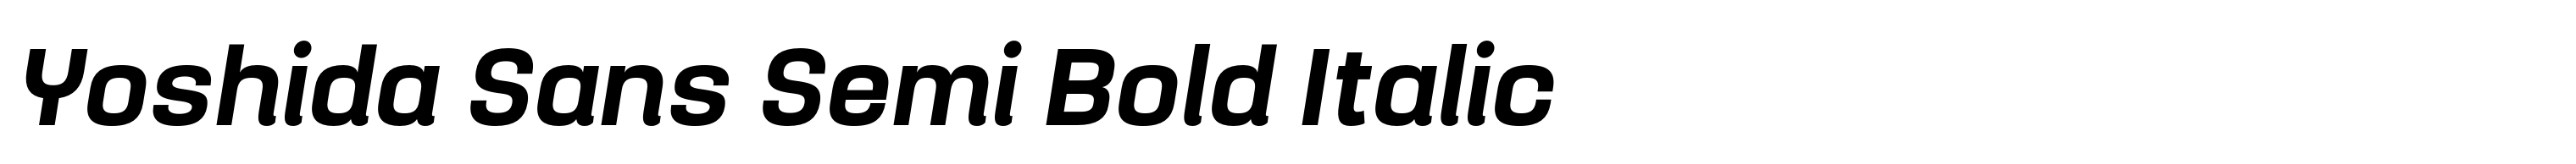 Yoshida Sans Semi Bold Italic